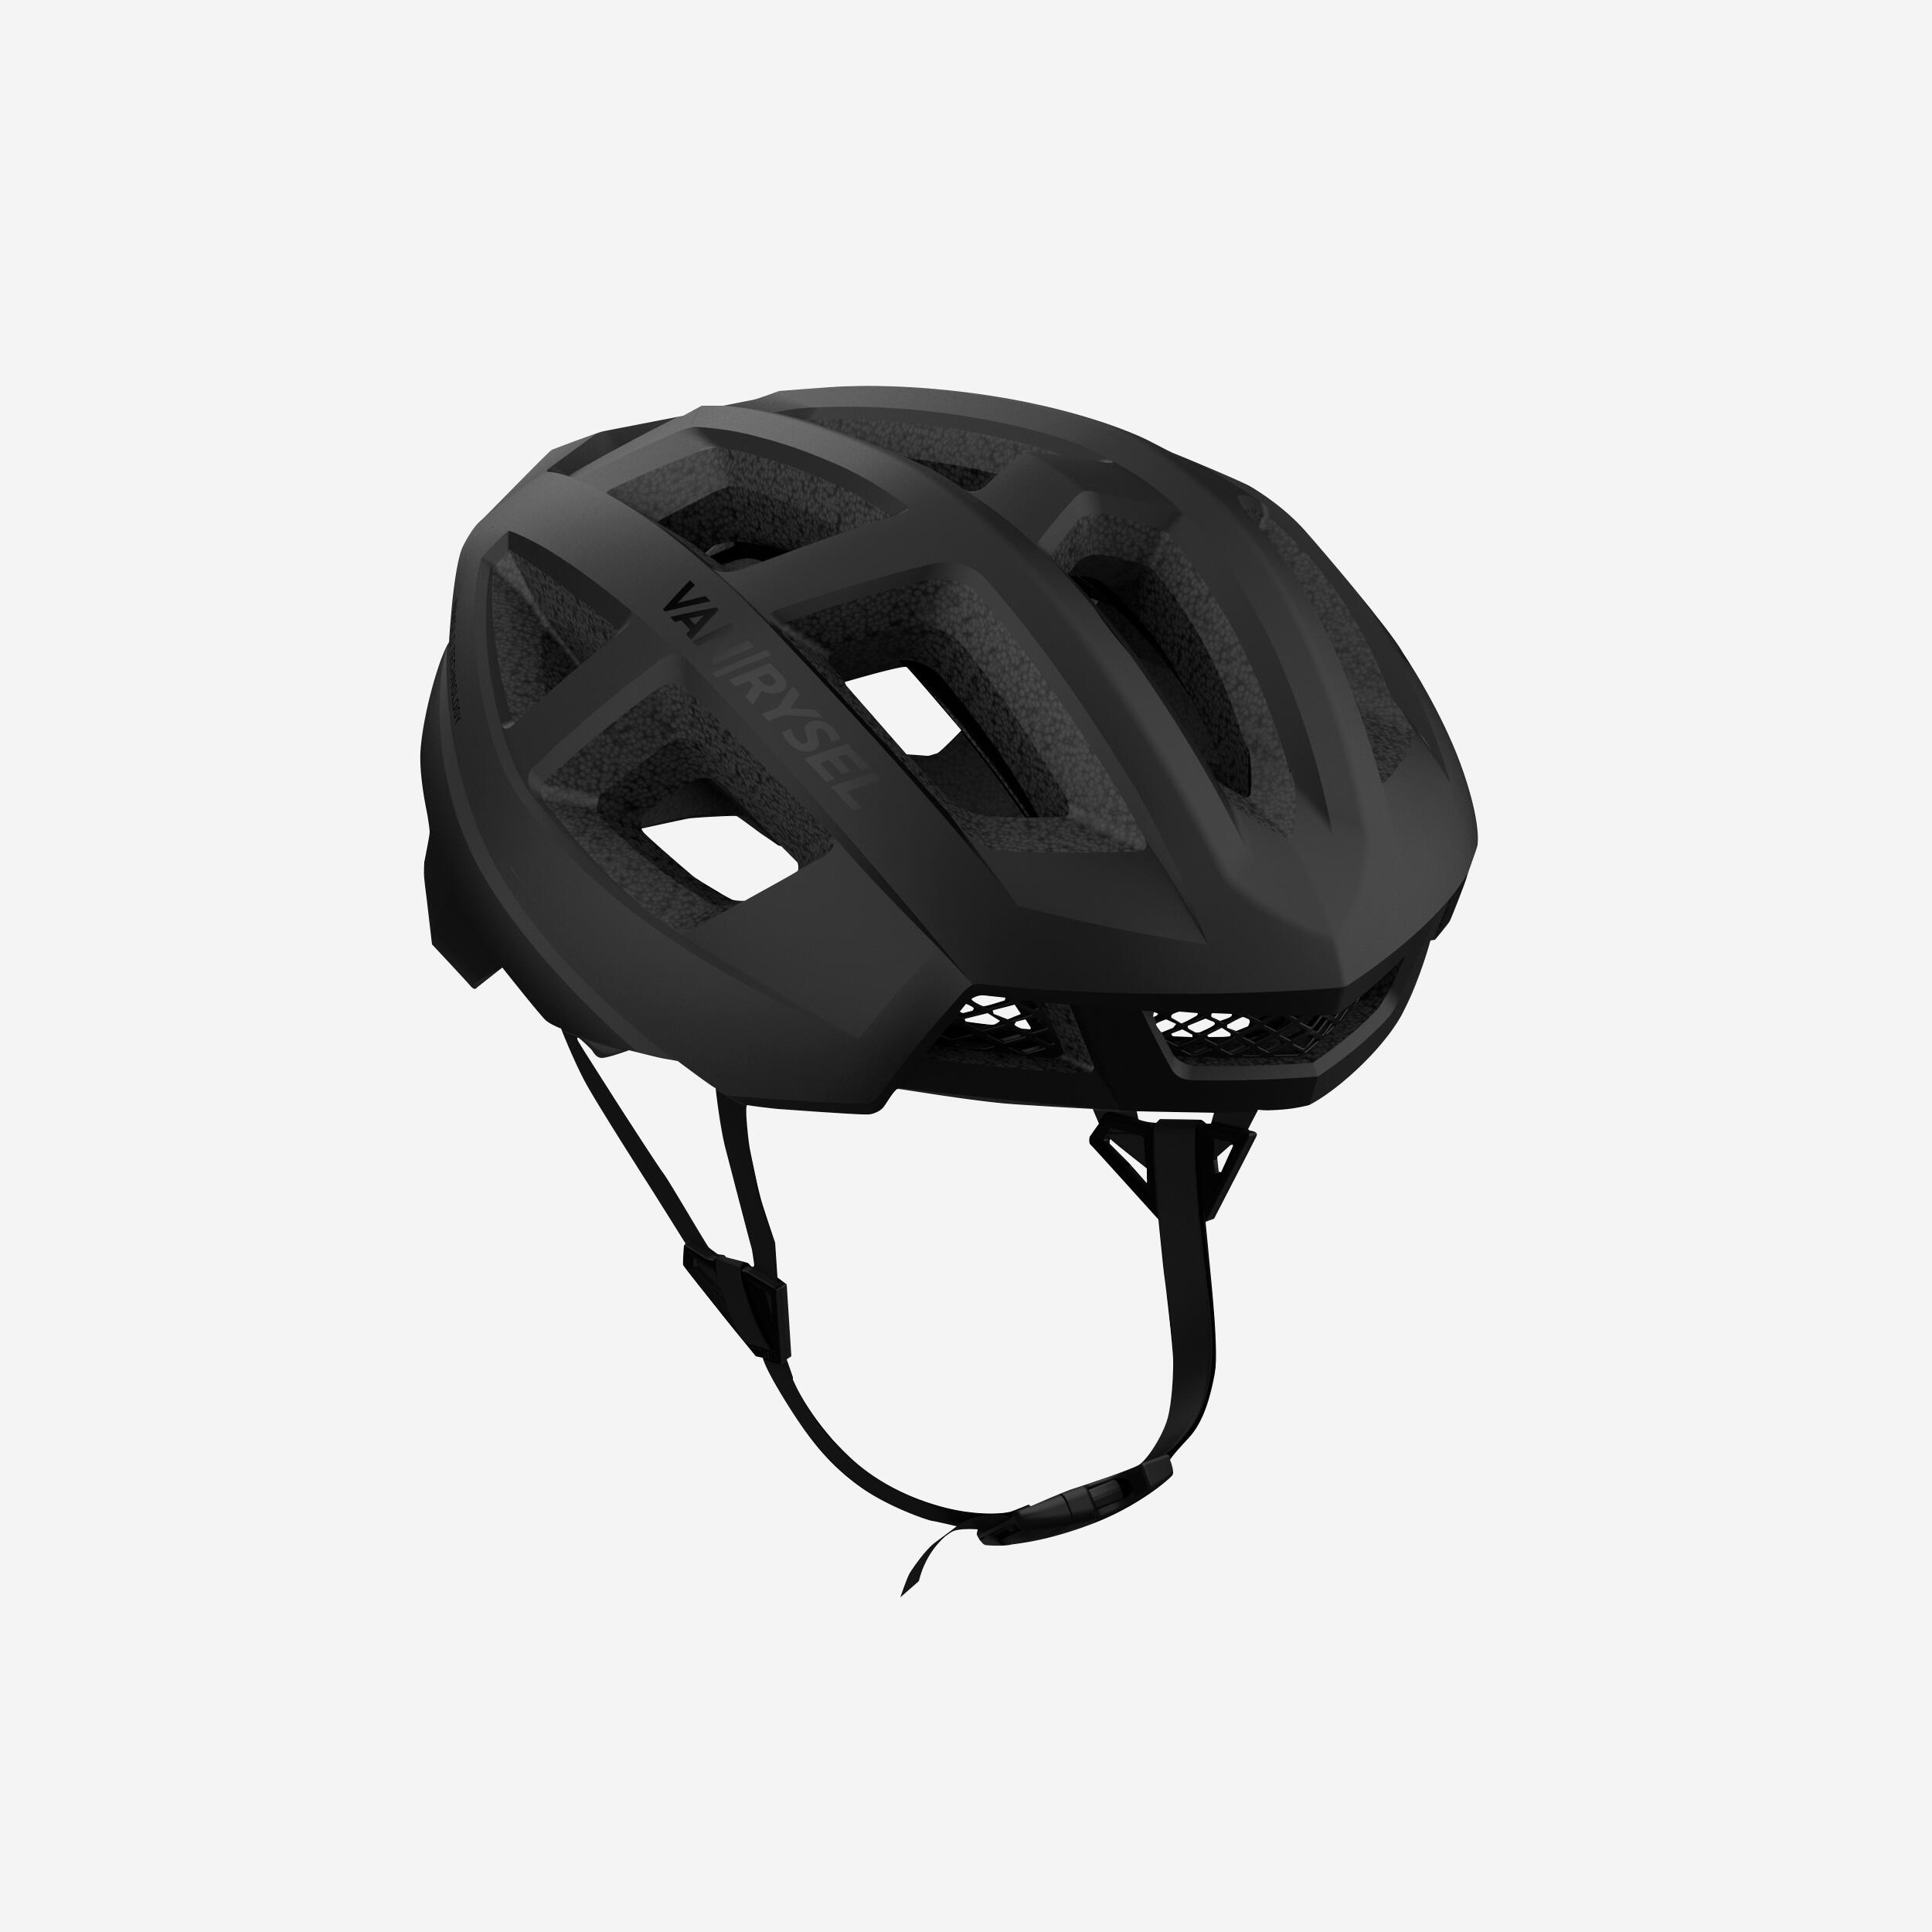 Racer Road Cycling Helmet - Black 5/7